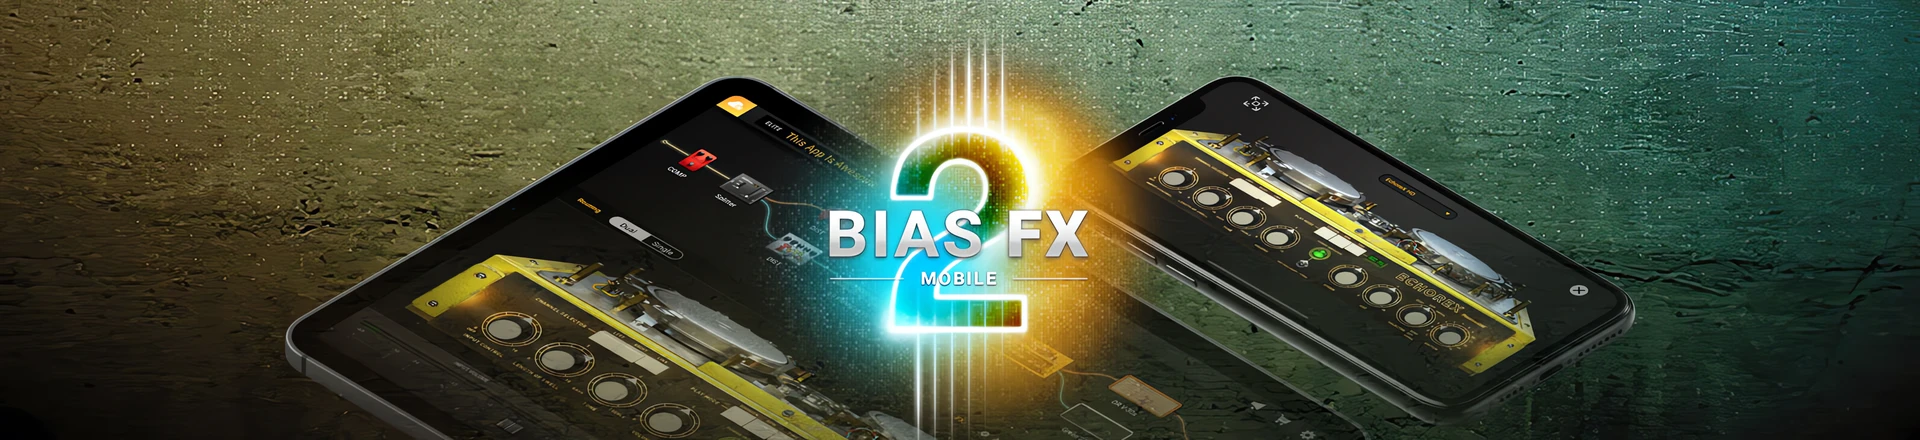 Bias FX 2 Mobile - brzmij doskonale w każdych warunkach! 